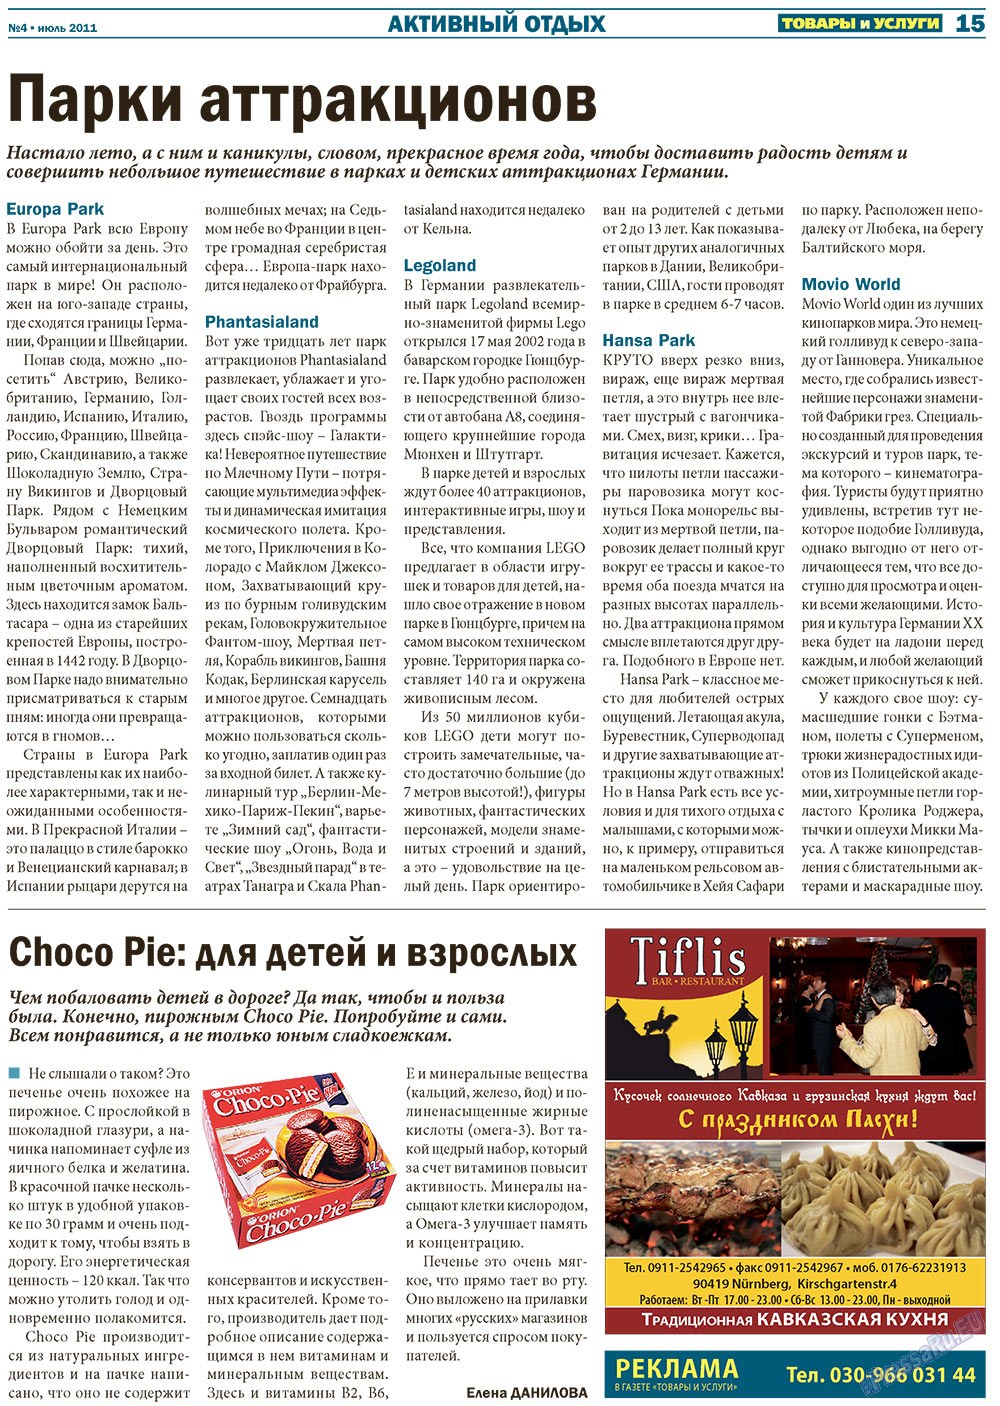 Товары и услуги (газета). 2011 год, номер 4, стр. 15